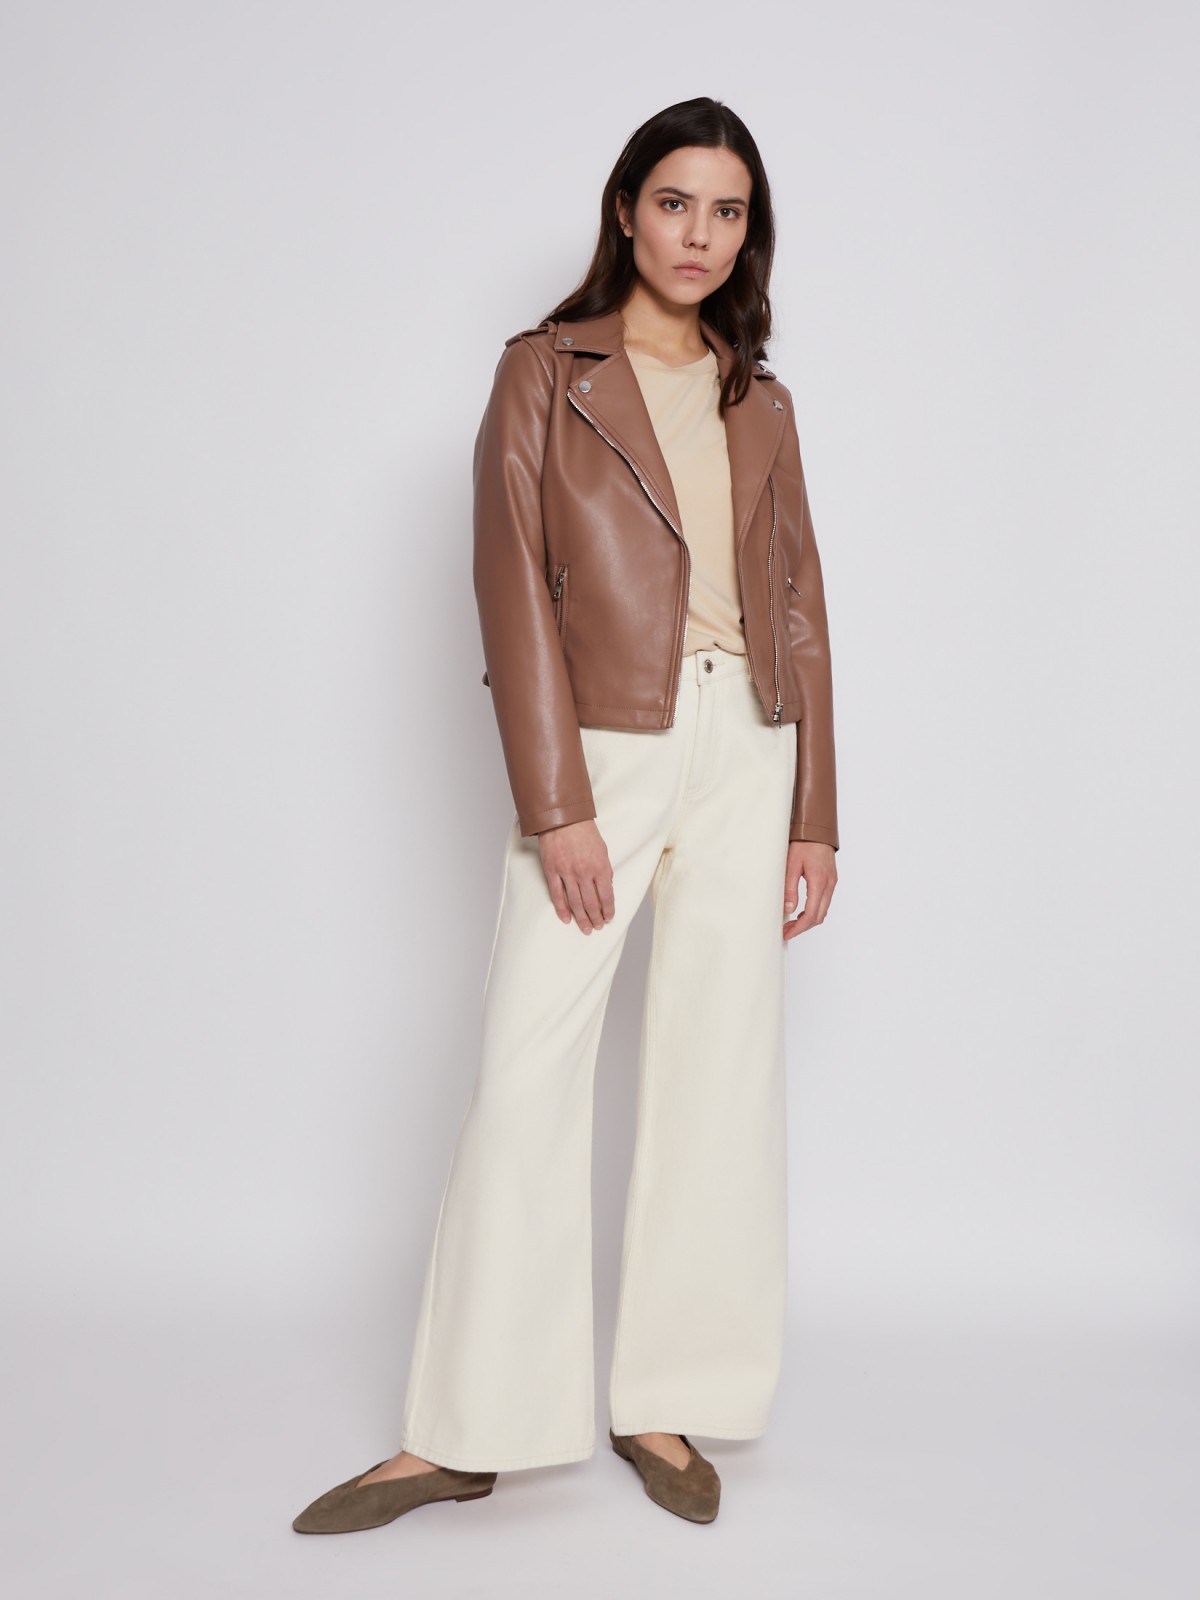 Кожаная куртка-косуха zolla 023215602054, цвет коричневый, размер XS - фото 2